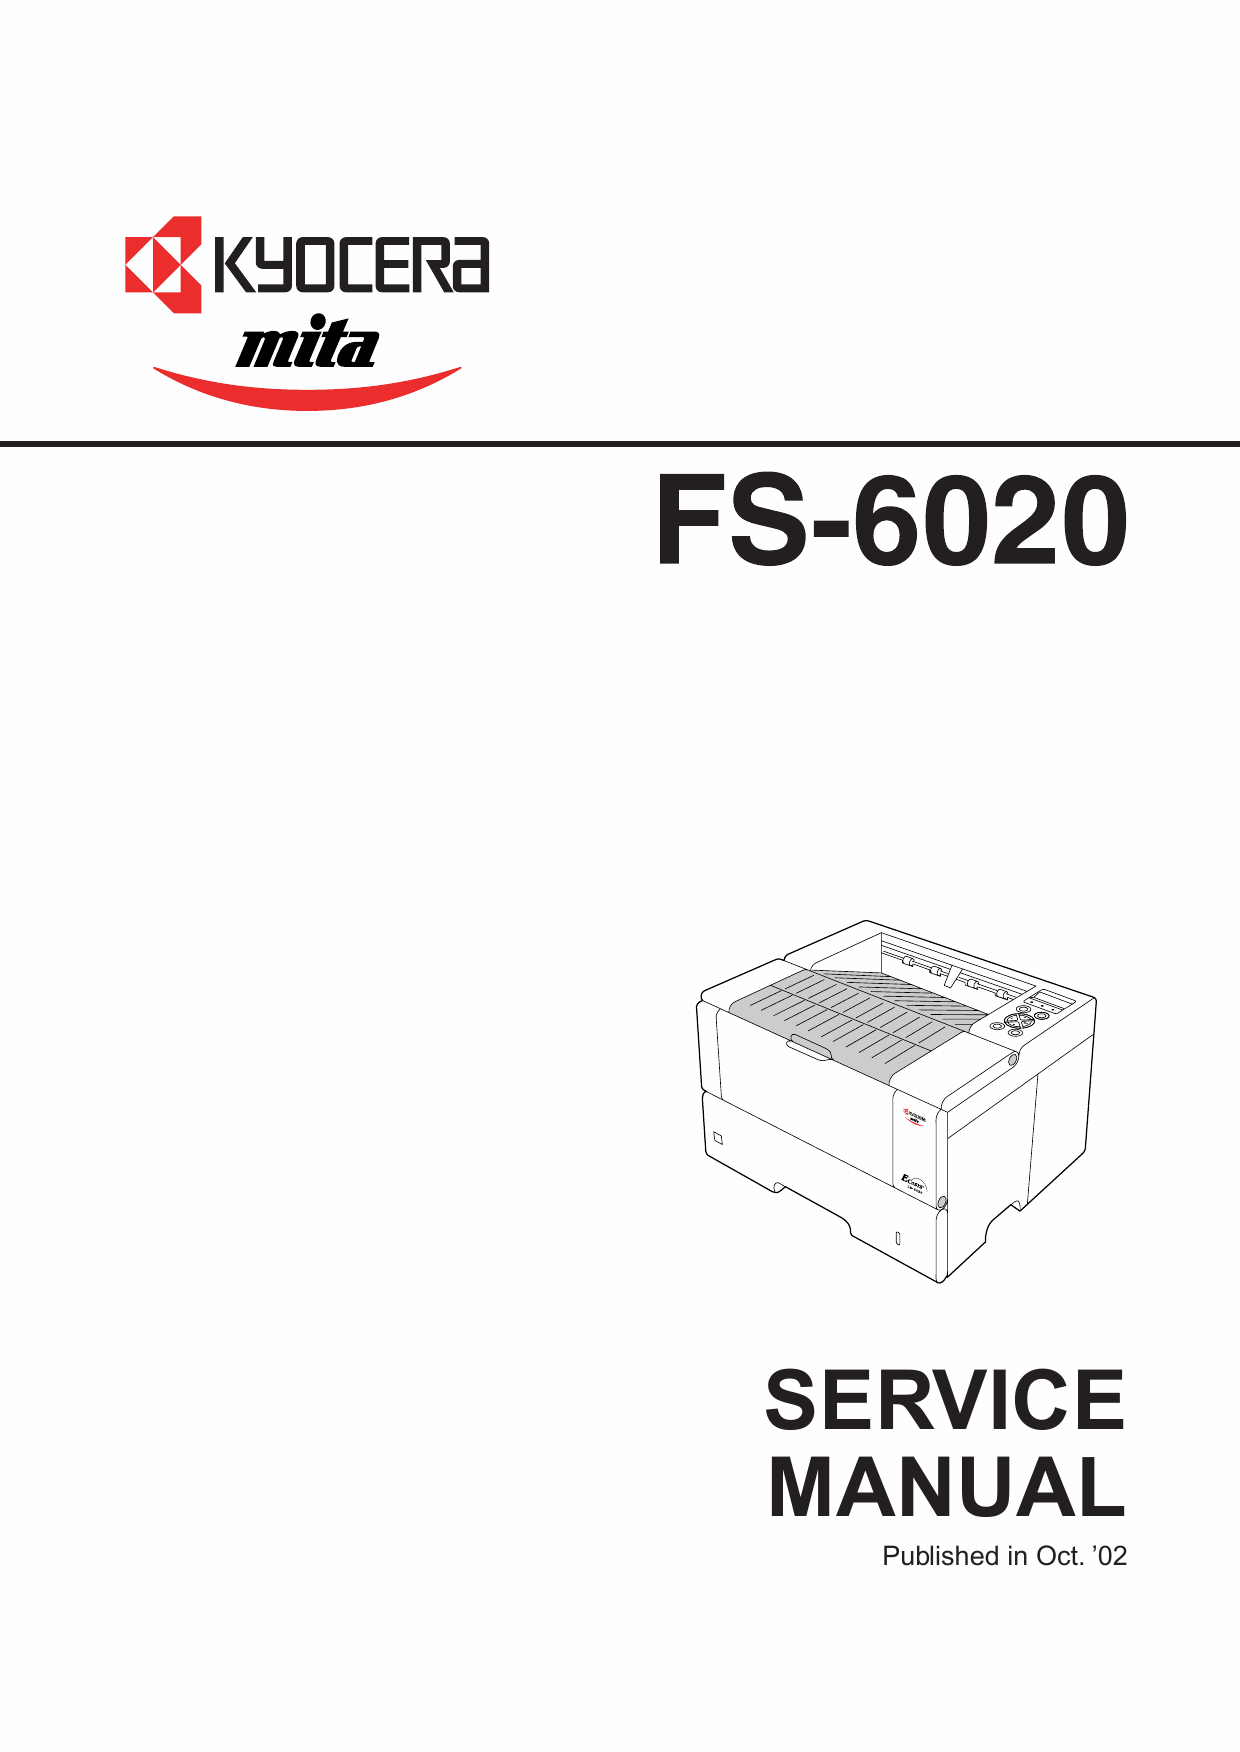 KYOCERA LaserPrinter FS-6020 Parts and Service Manual-1